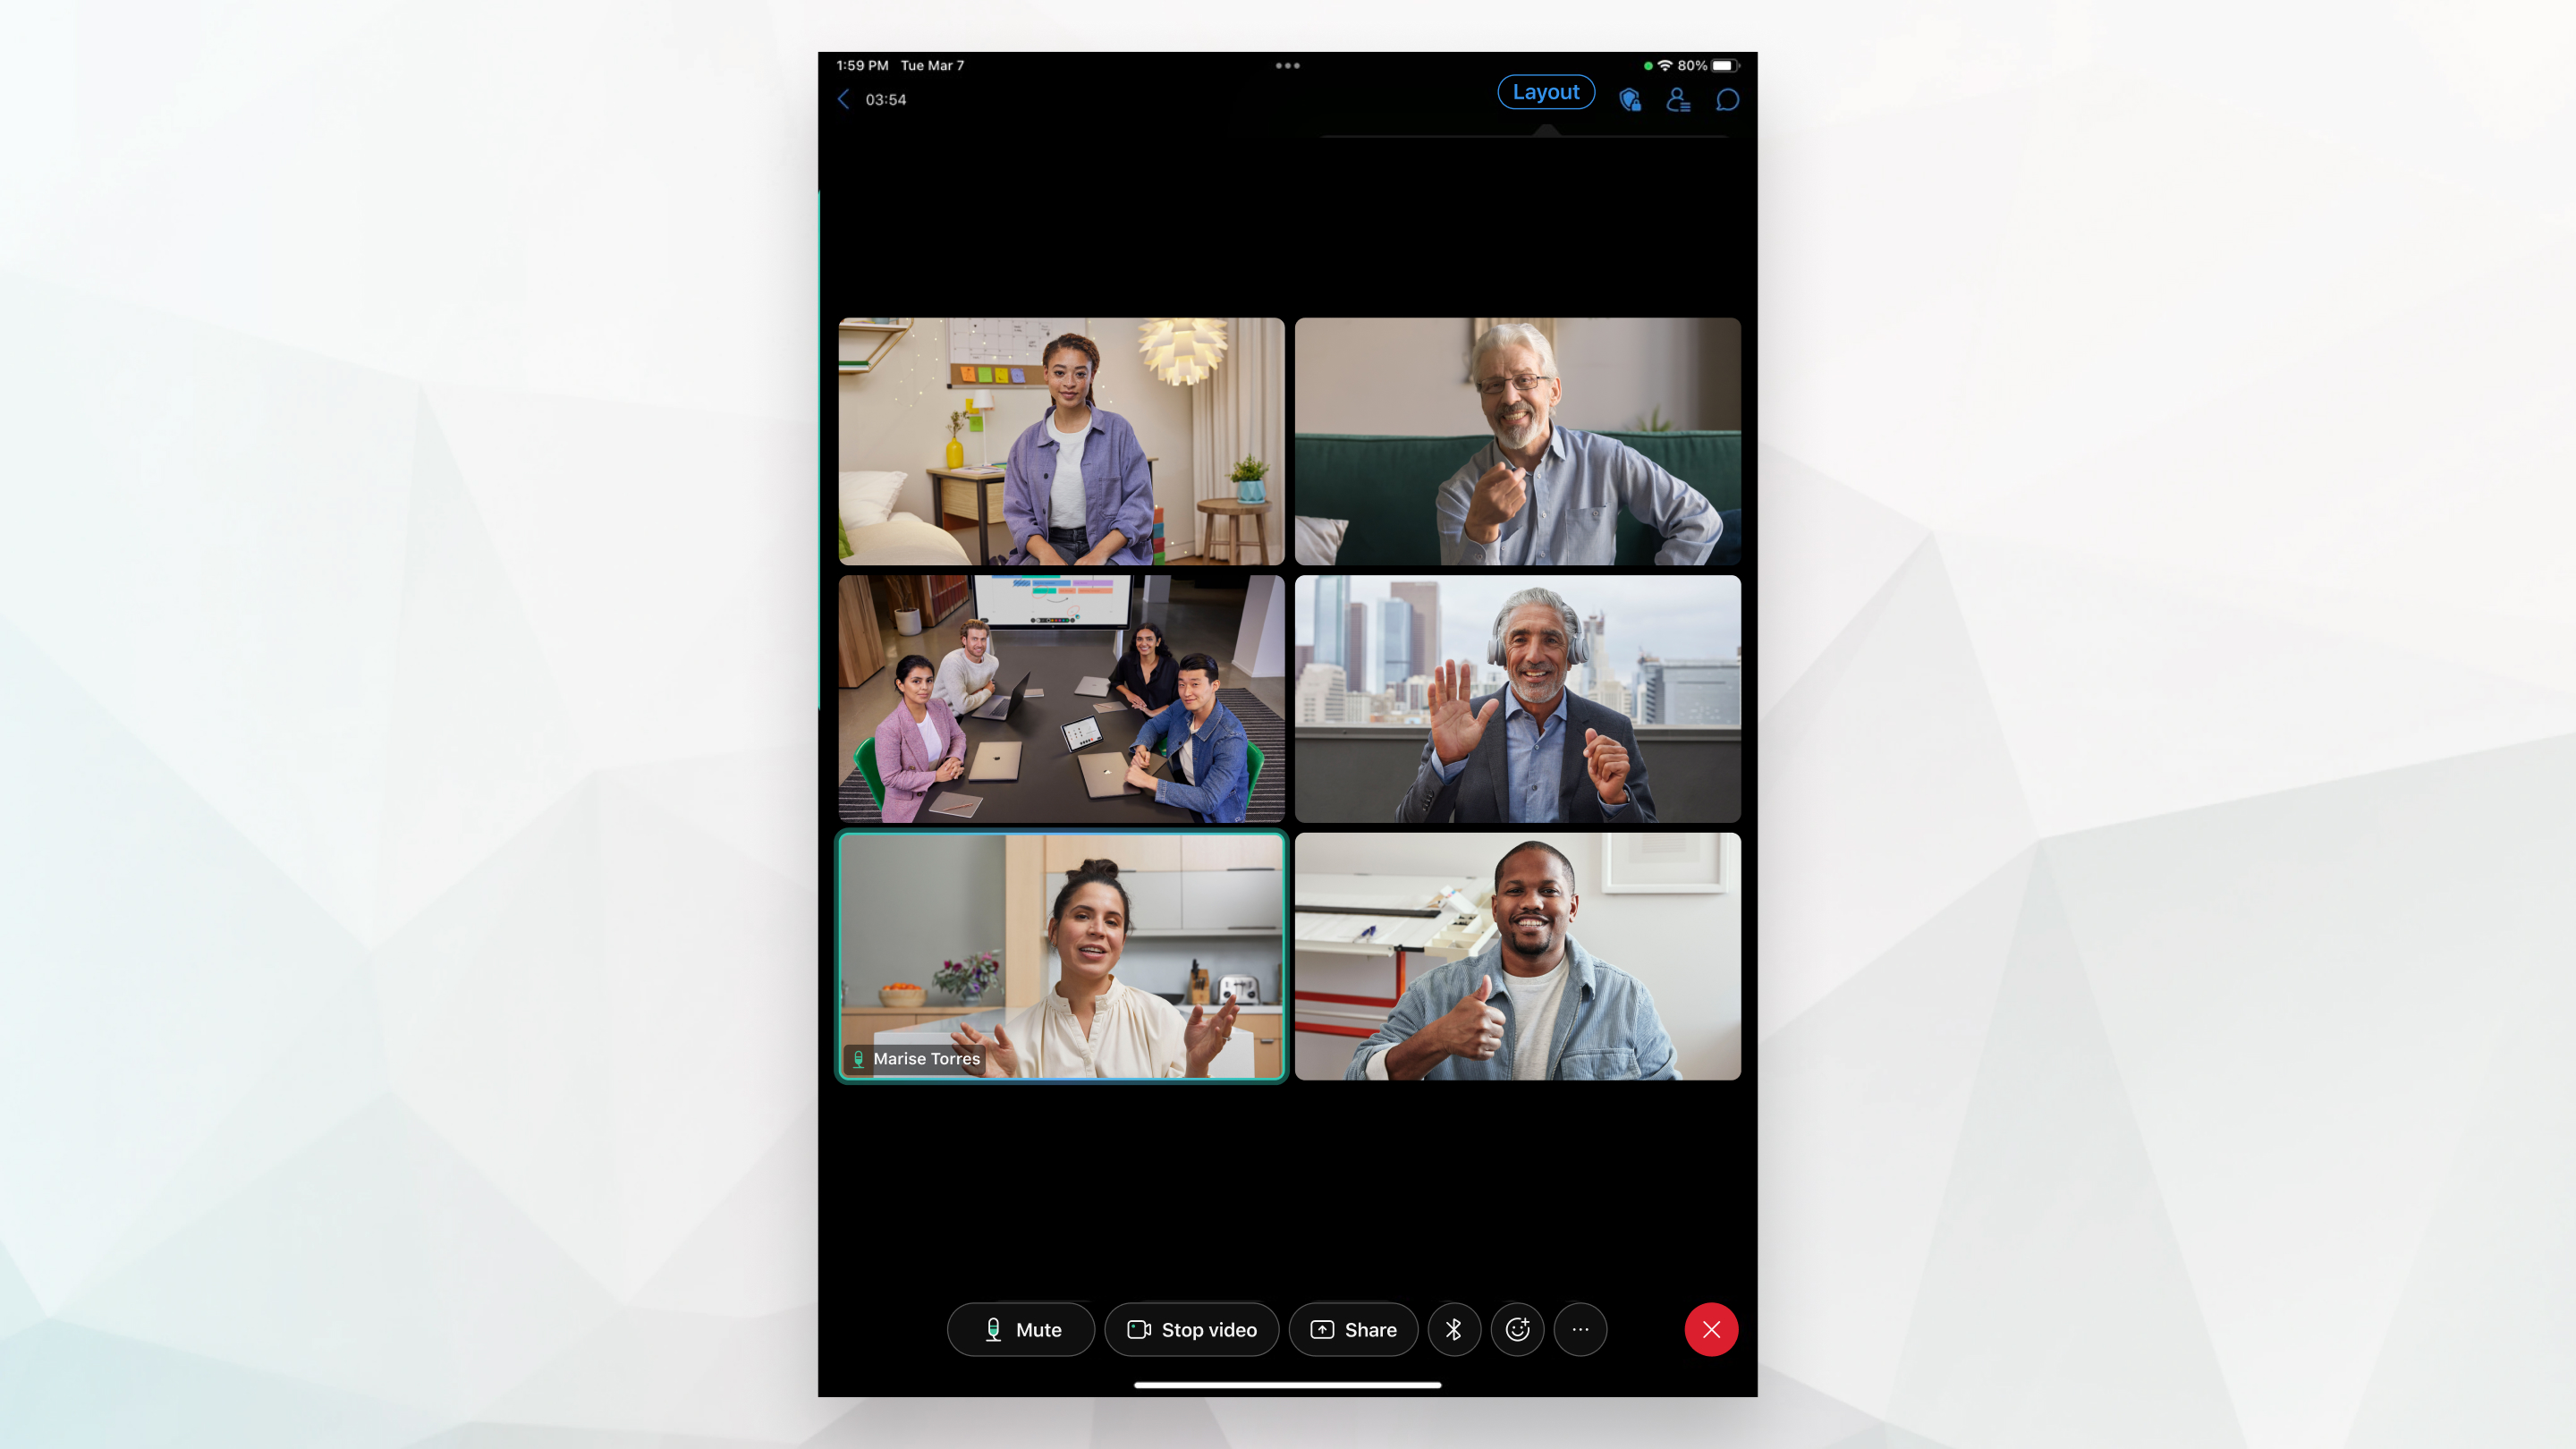 2x3 vizualizare caroiaj în timpul unei întâlniri pe iPad